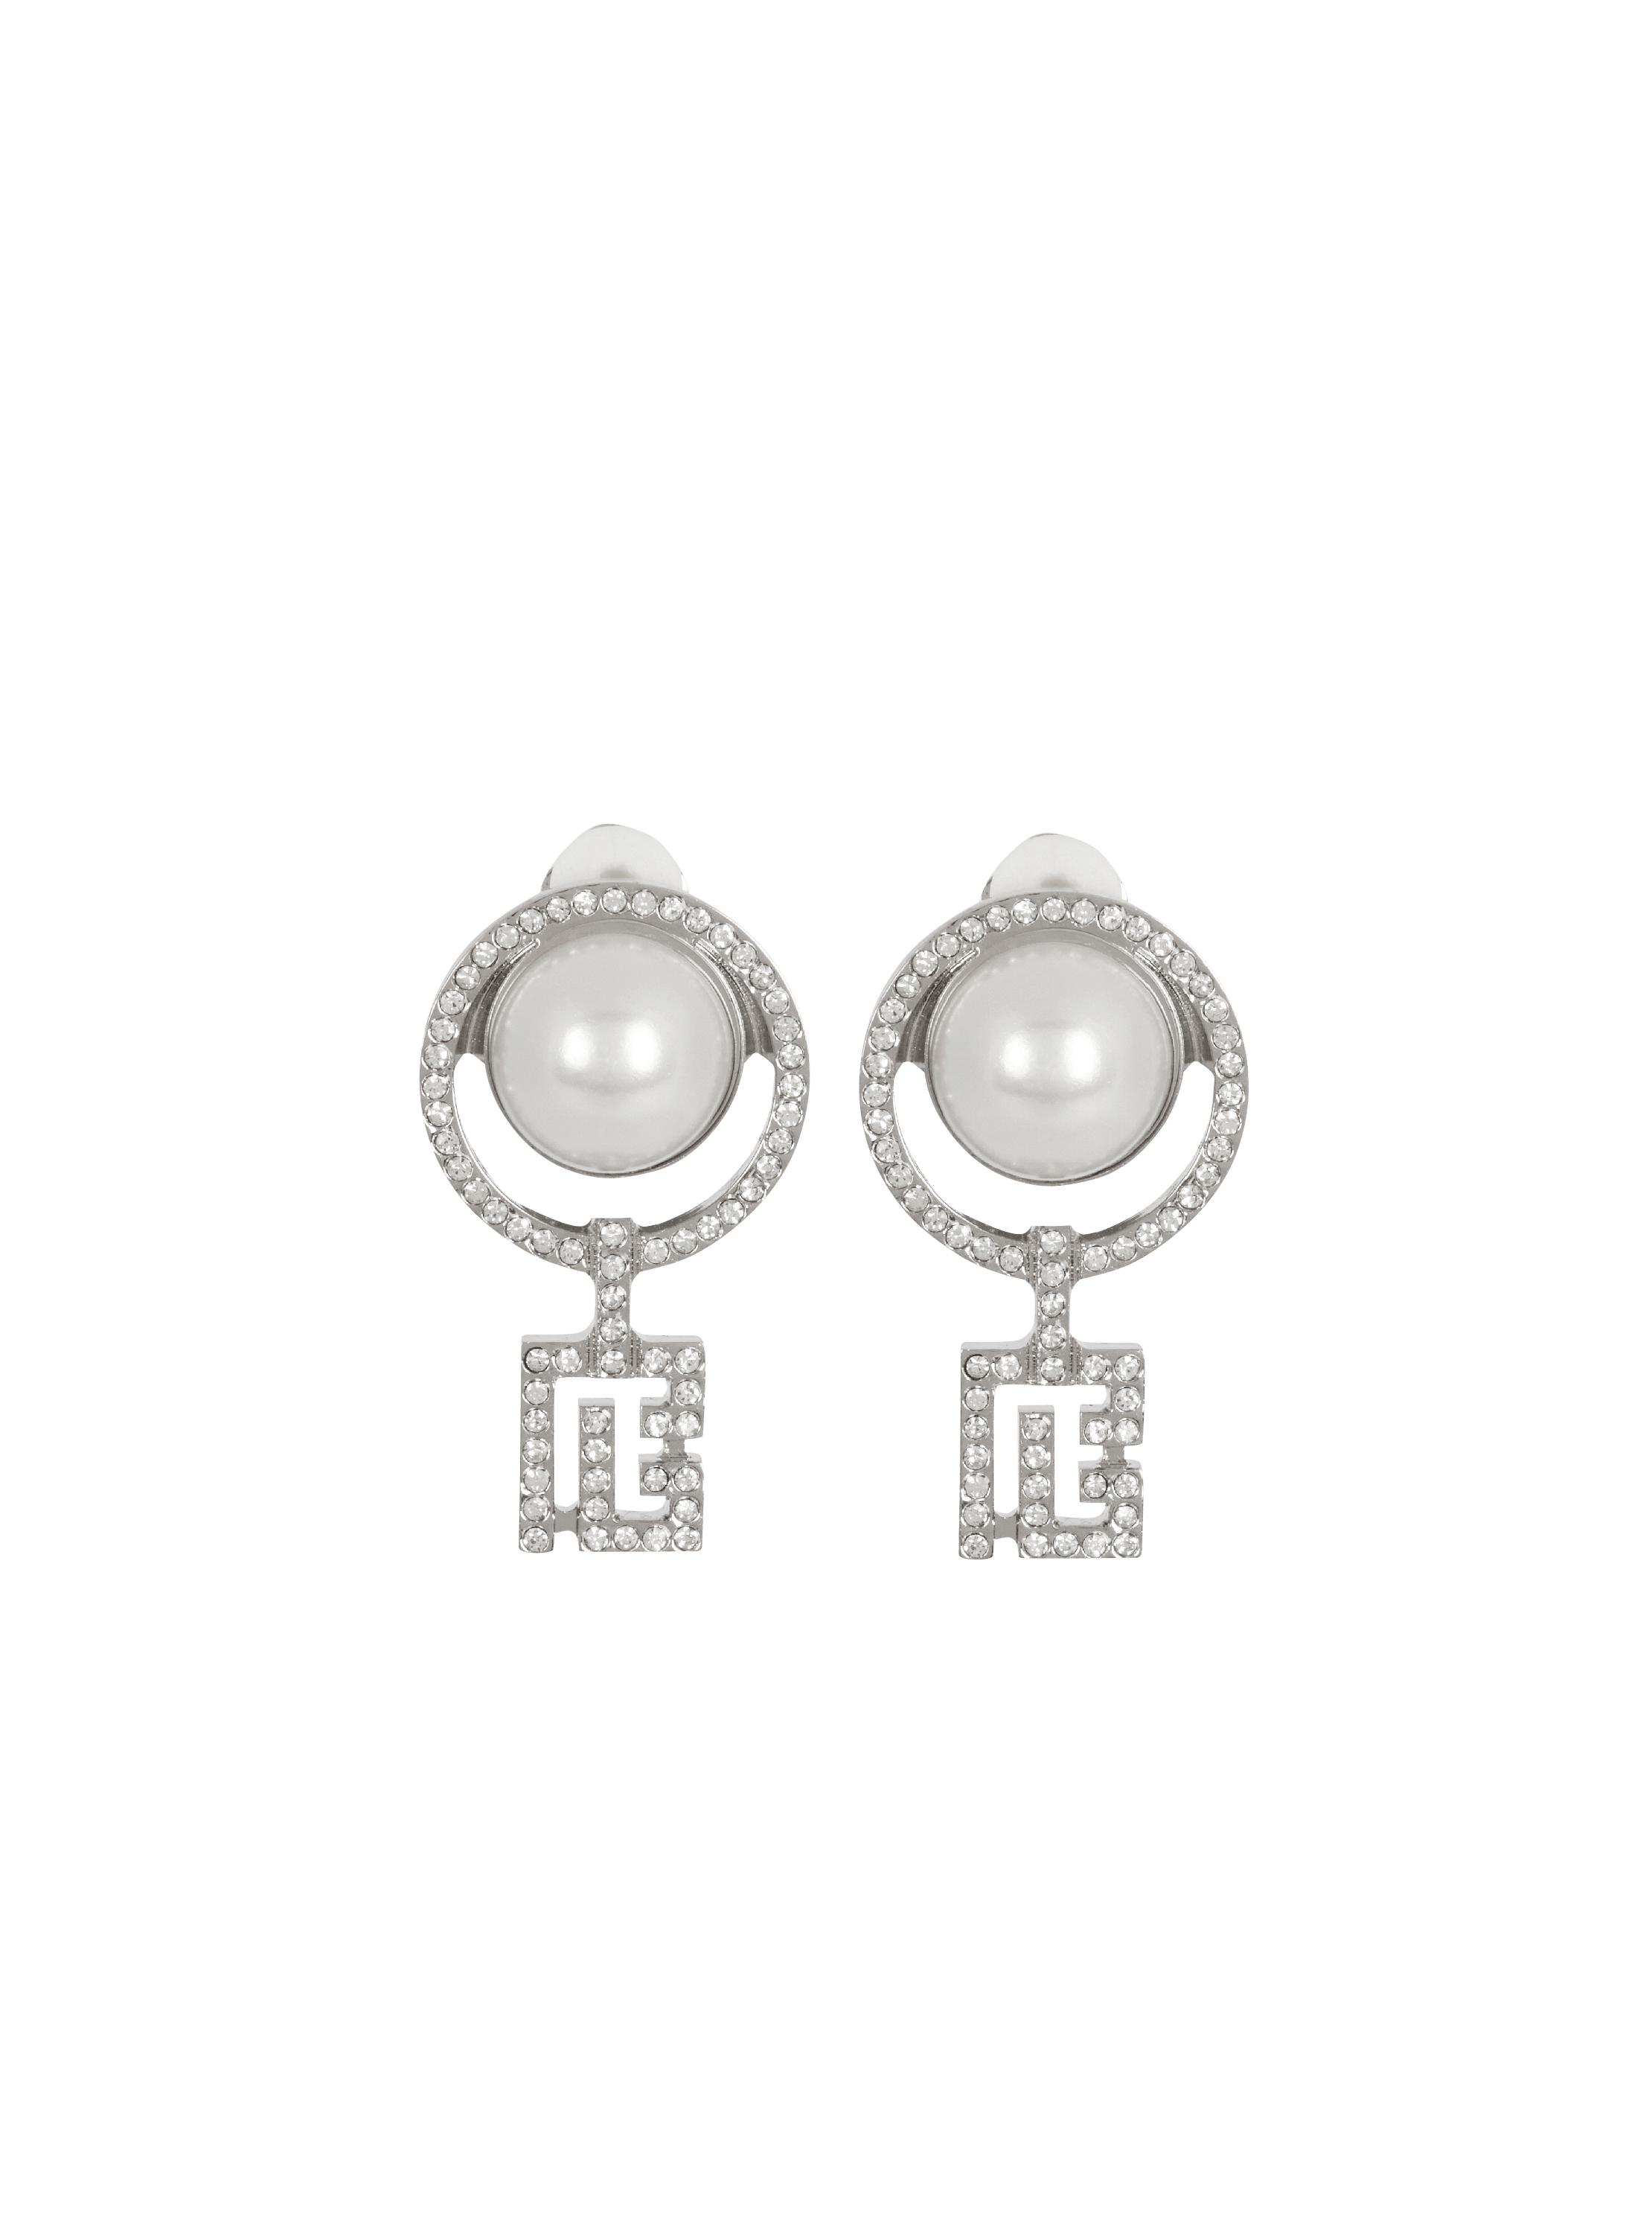 Pearl earrings with Art Deco rhinestones